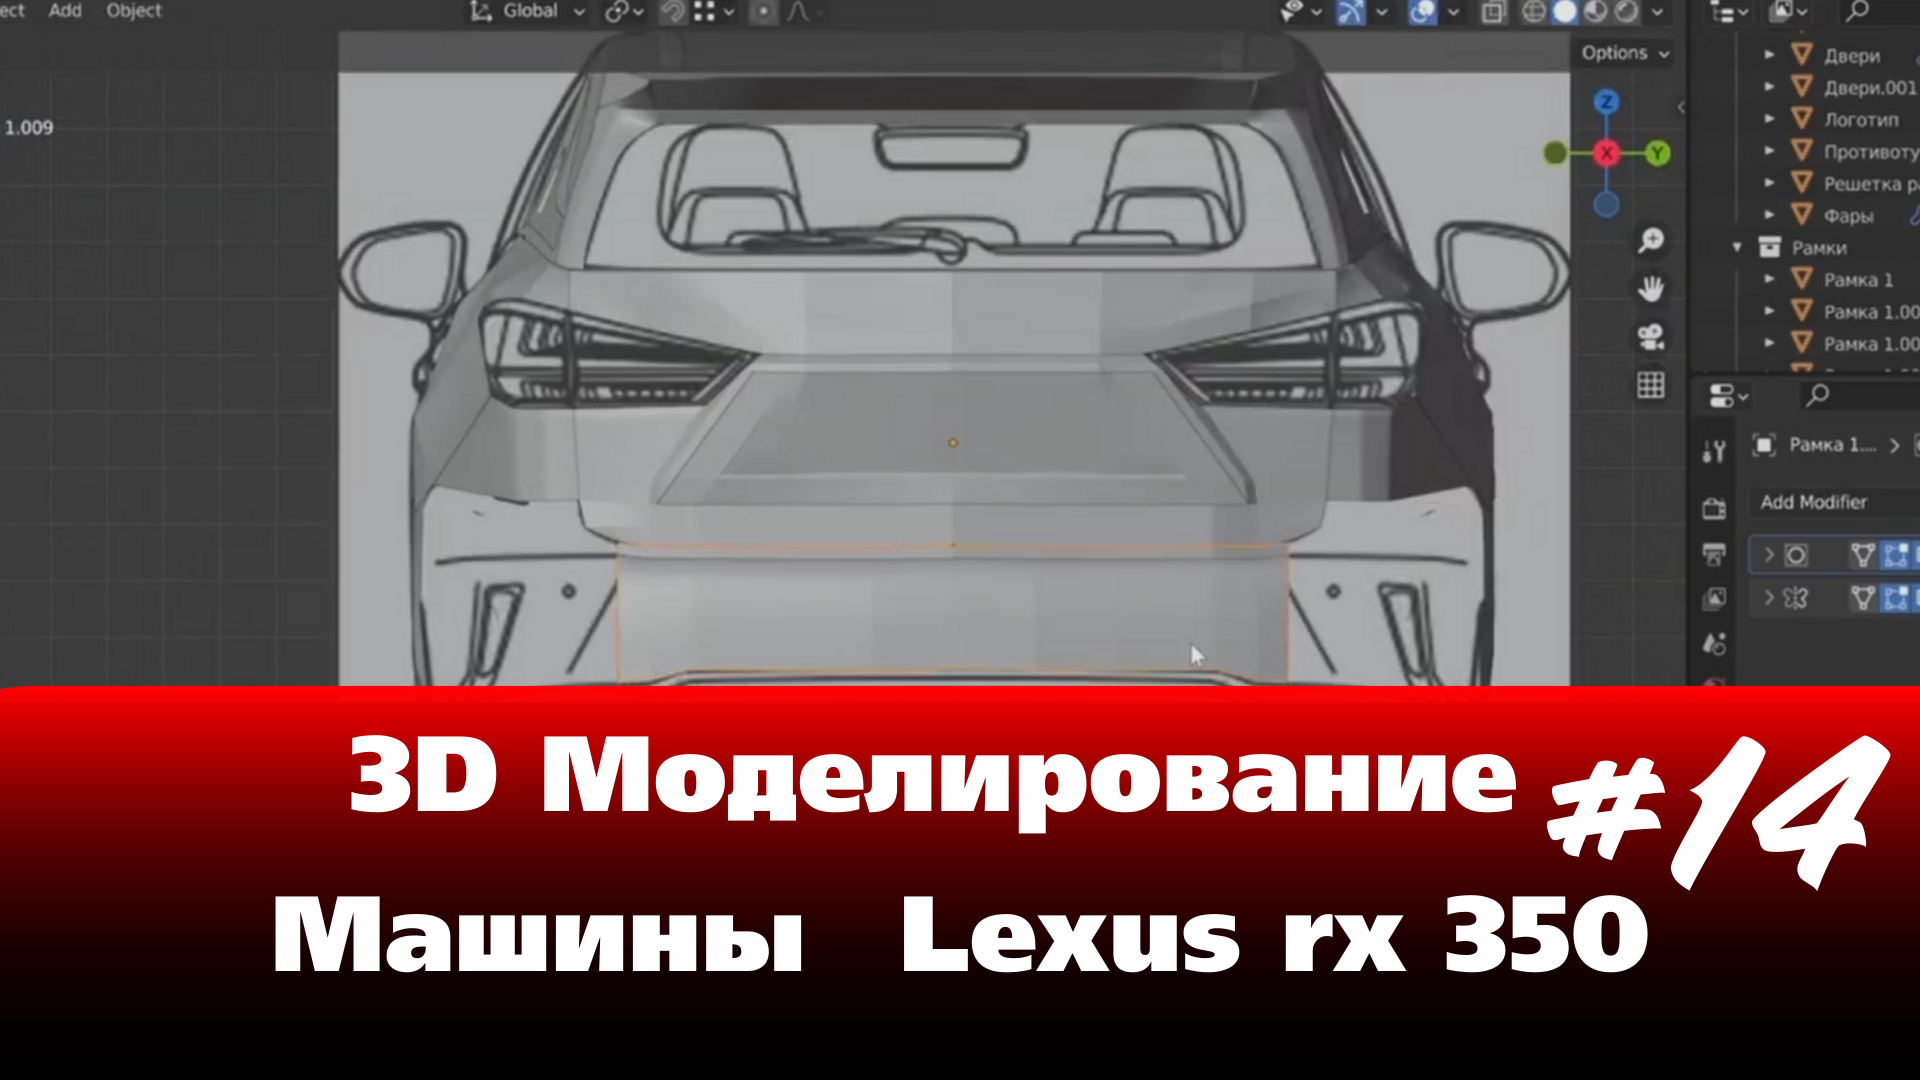 3D Моделирование Машины в Blender - Lexus rx 350 часть 14 #Blender